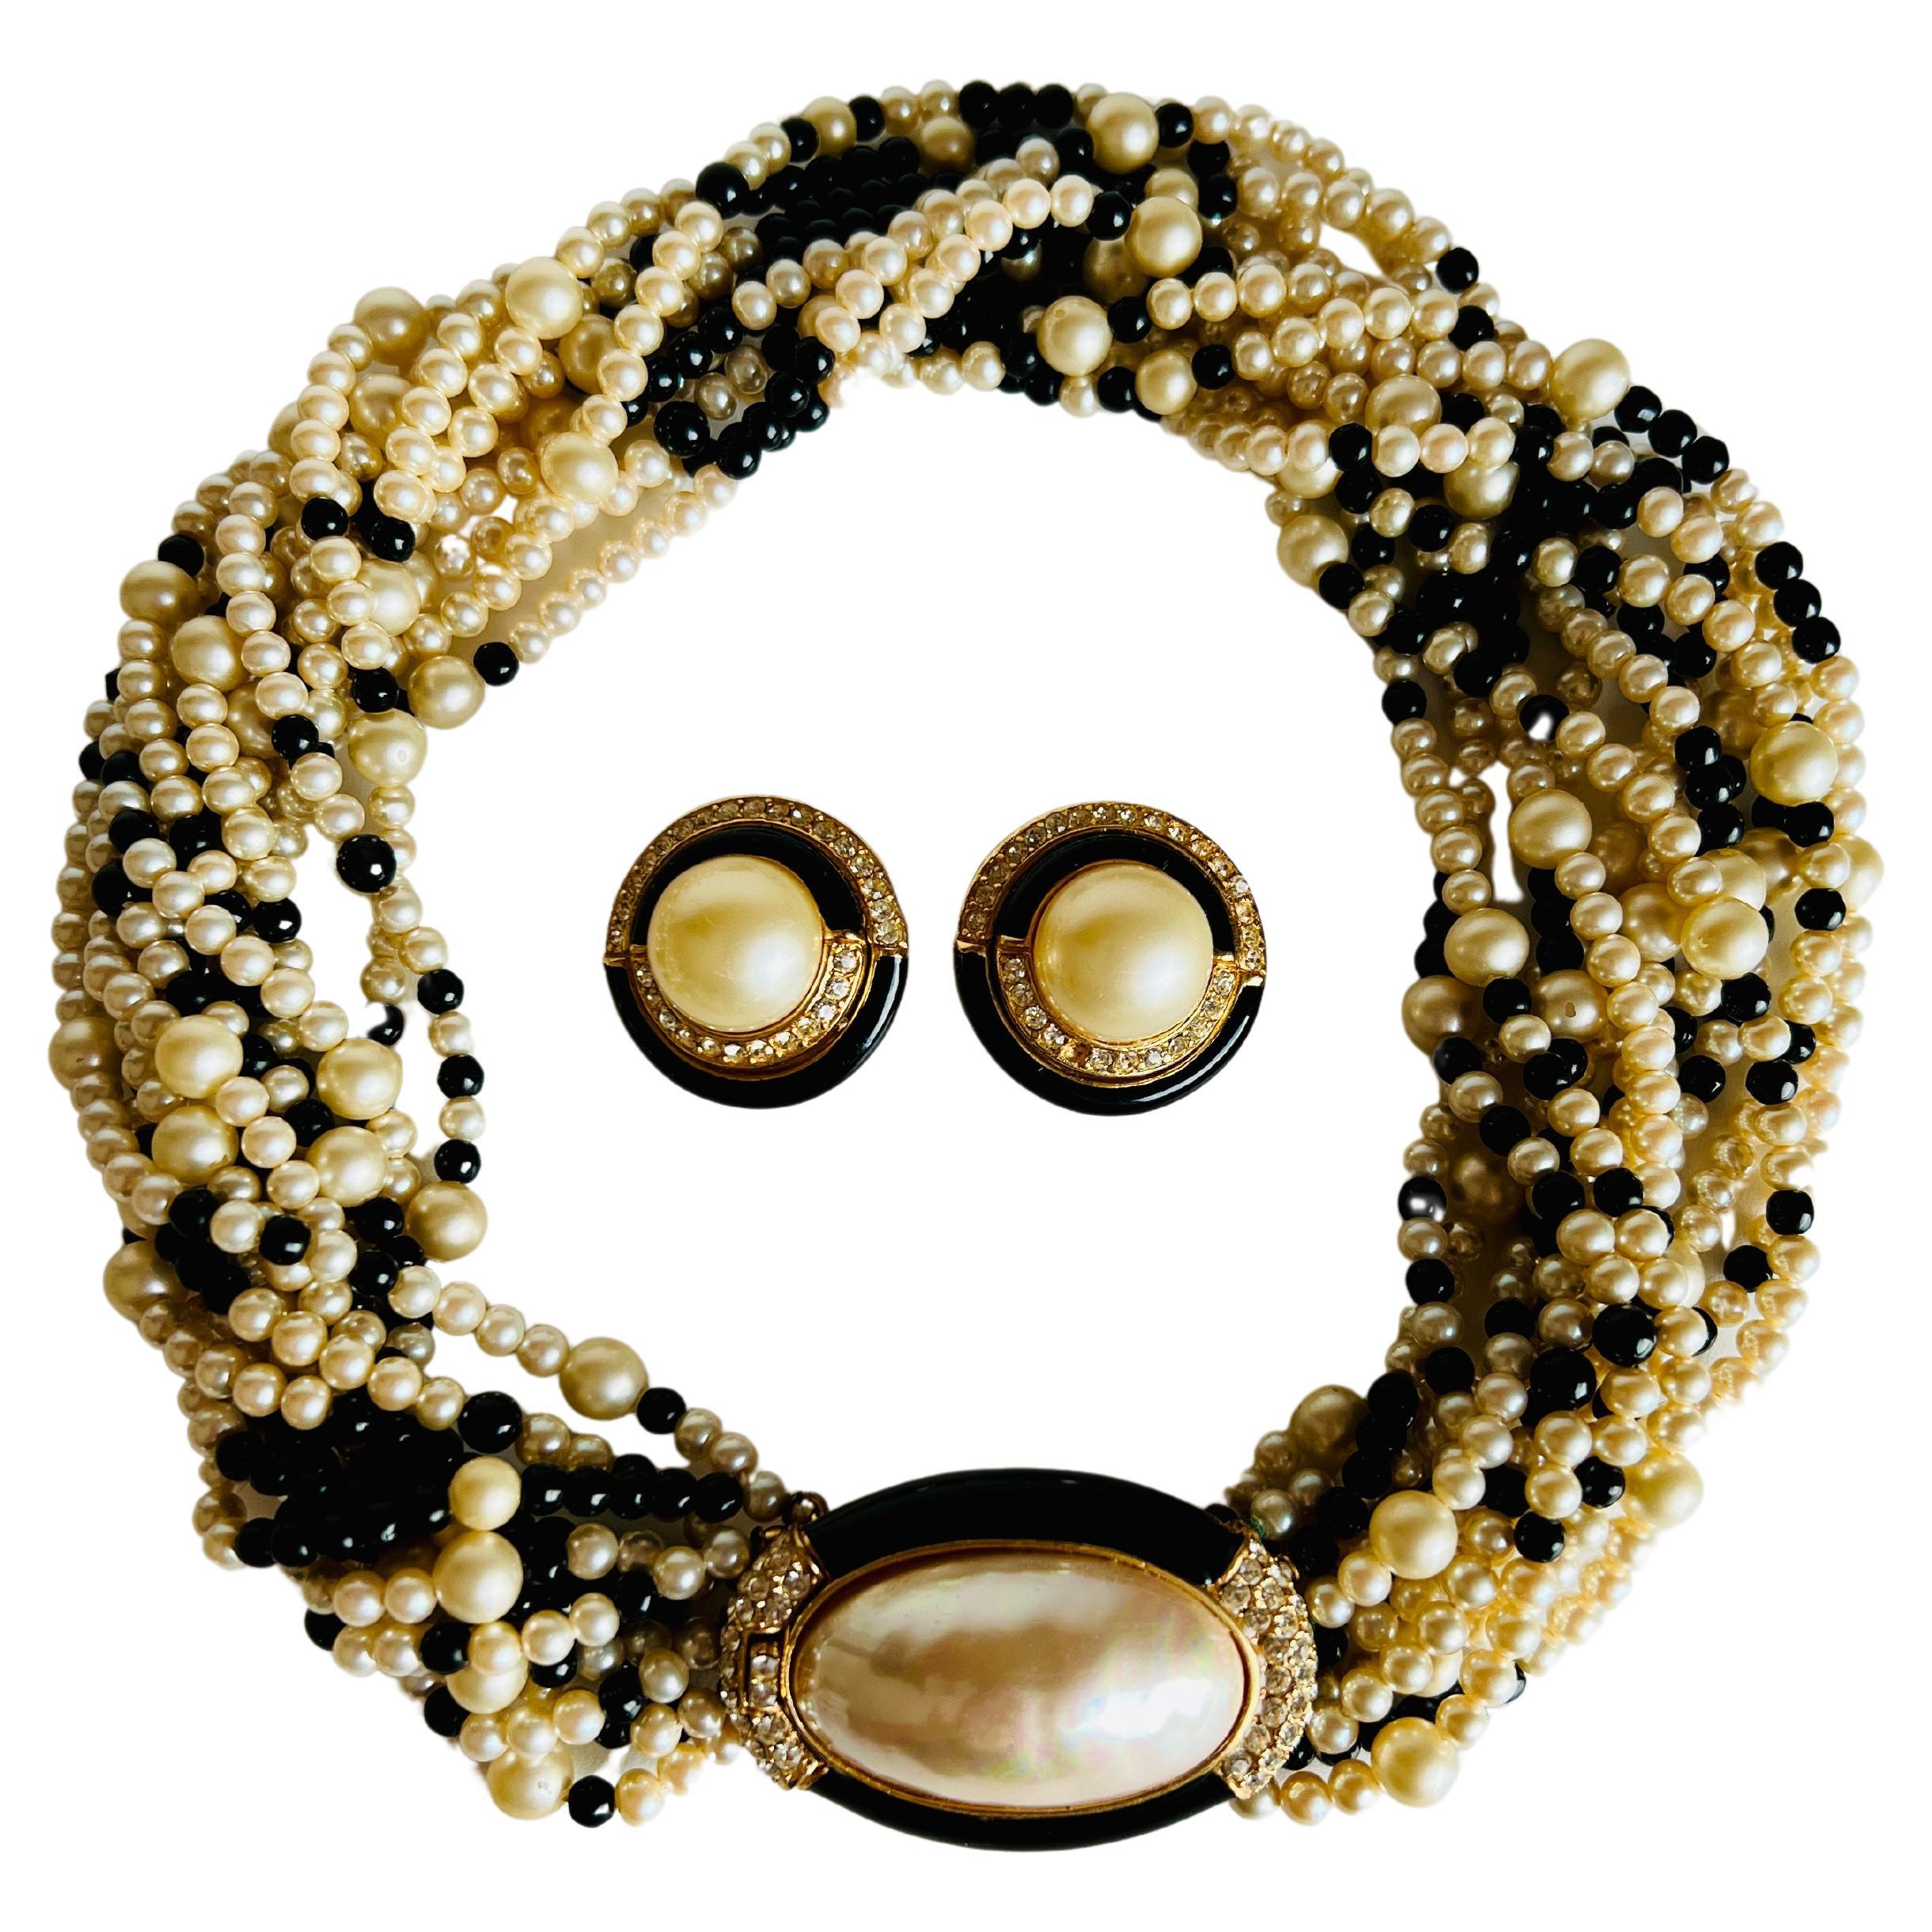 Cet élégant ensemble comprend un collier torsade en imitation de perle et verre noir, doté d'un fermoir de couleur or et centré sur une imitation de perle de style mabe rehaussée de strass et d'émail noir, ainsi qu'une paire de boucles d'oreilles